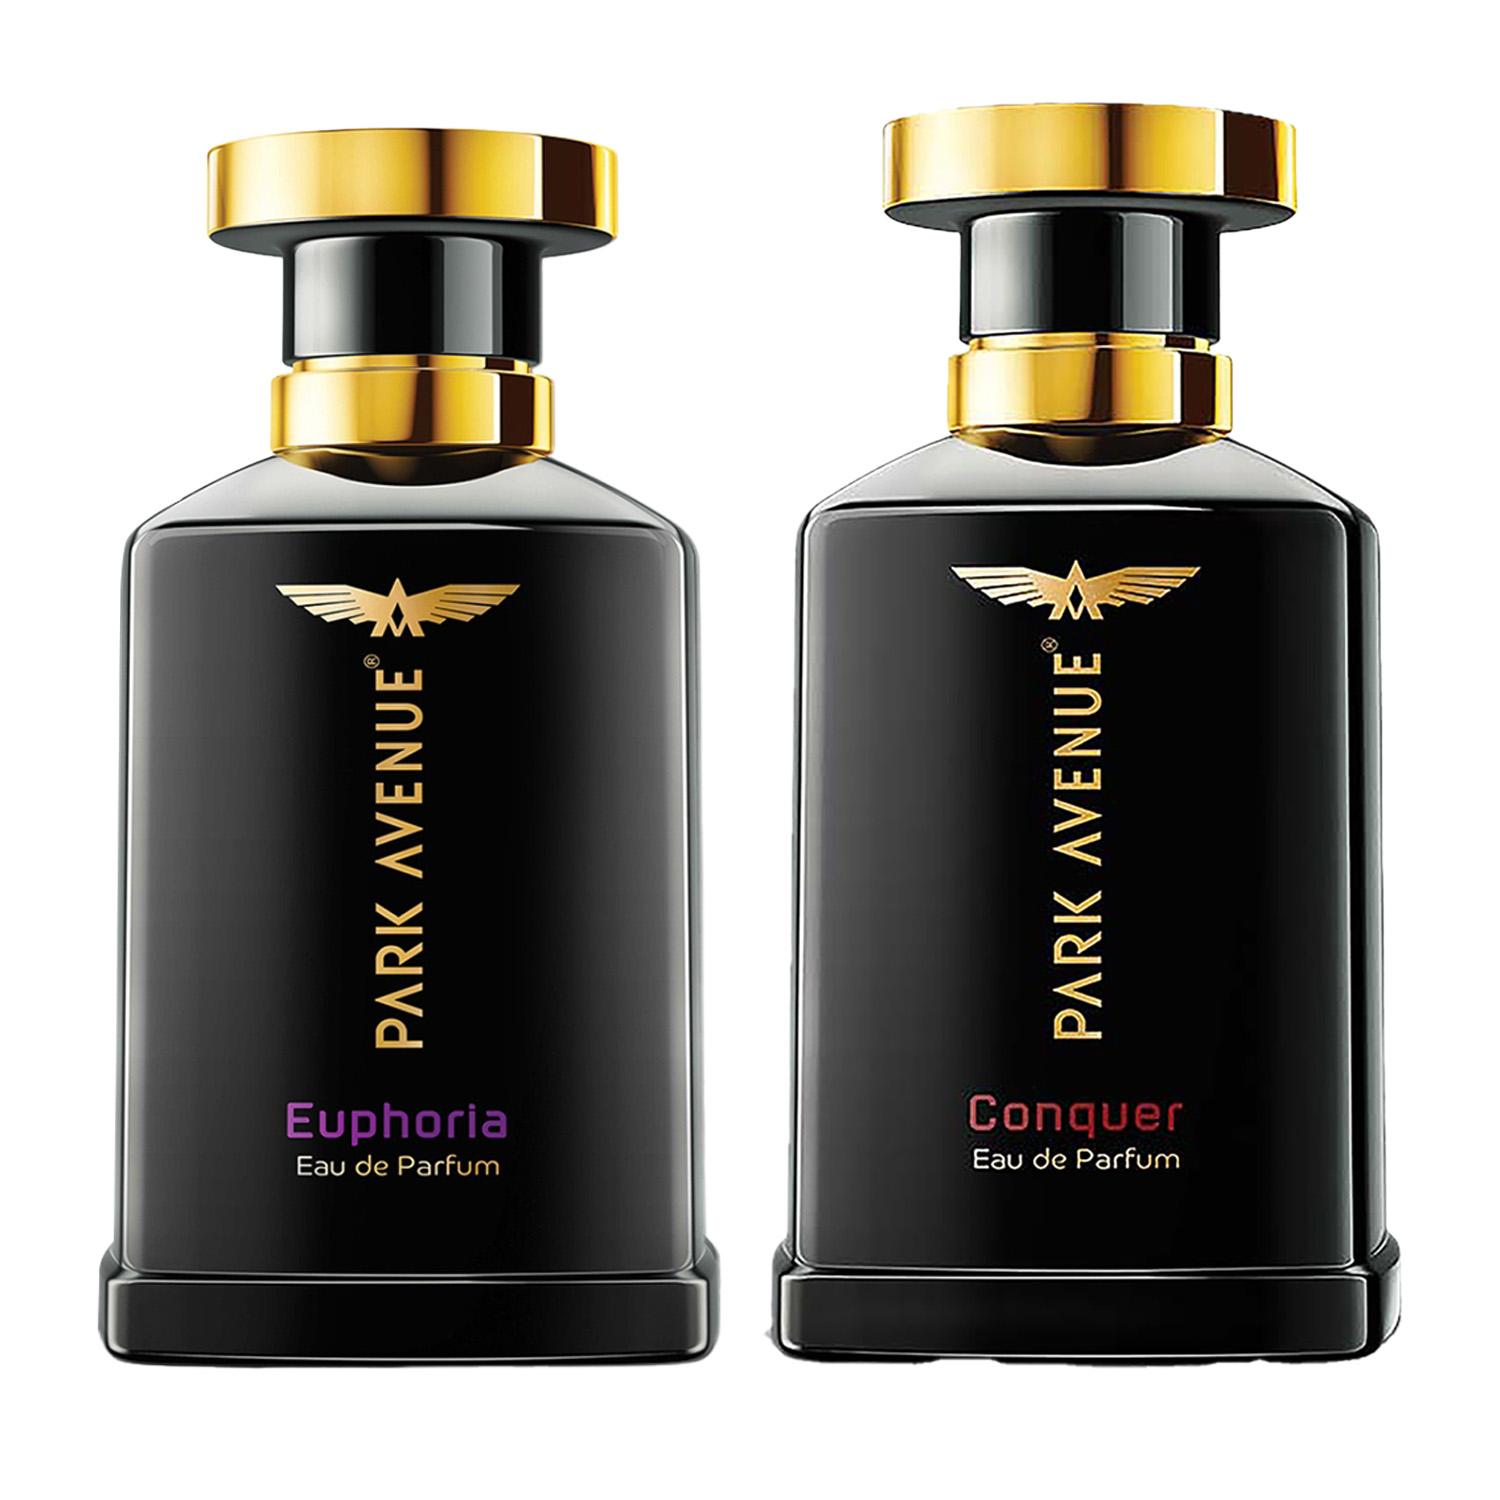 Park Avenue Eau De Perfum Euphoria (100 ml) & Eau De Perfum Conquer (100 ml) Combo